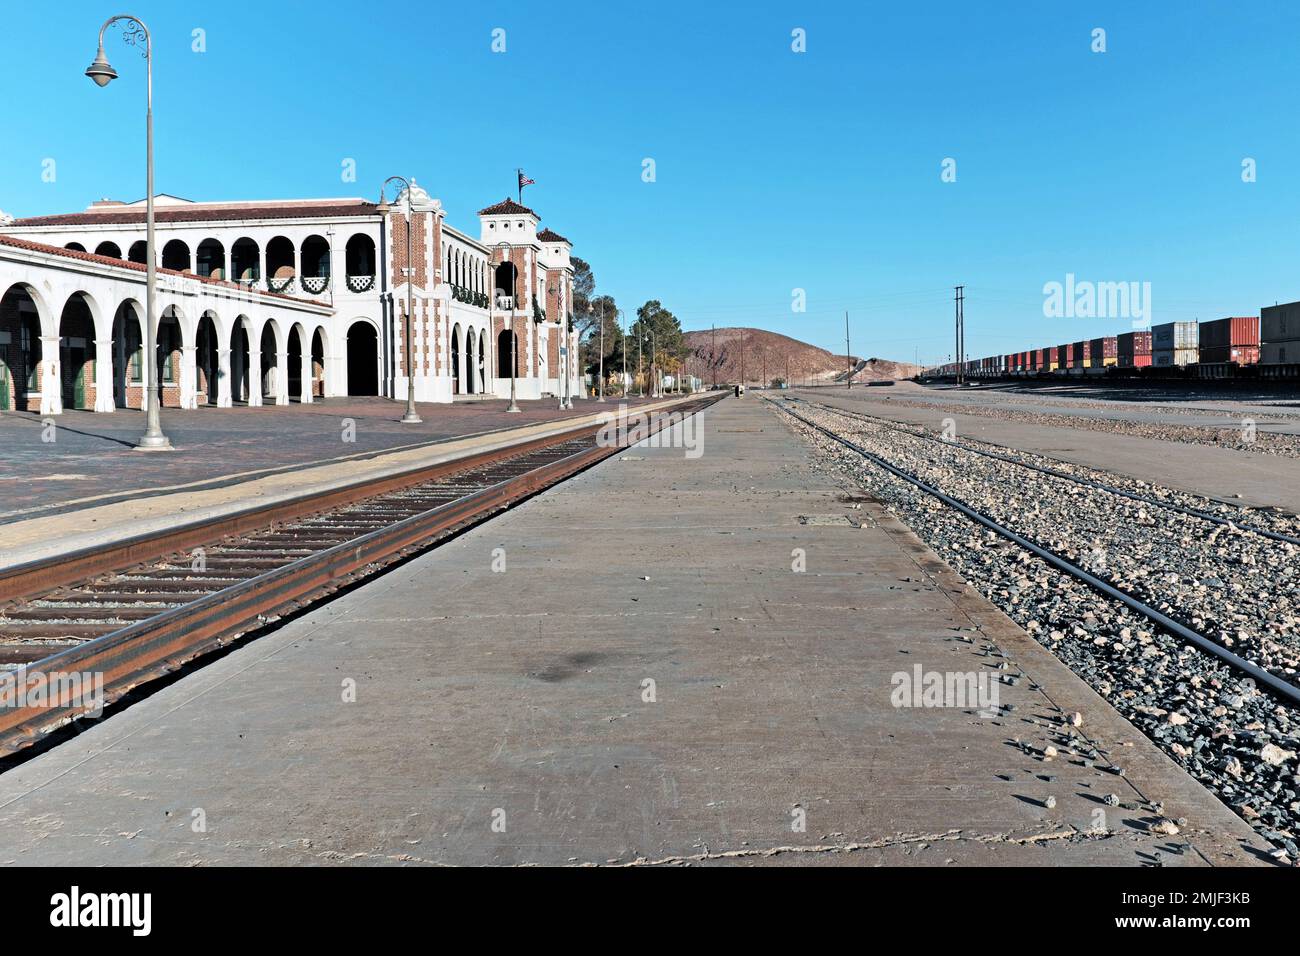 Casa de Desierto in Barstow, Kalifornien, ist ein Eisenbahndepot, der jetzt von Amtrak in der Mojave-Wüste genutzt wird und für die Gastfreundschaft der Harvey Girls bekannt ist. Stockfoto